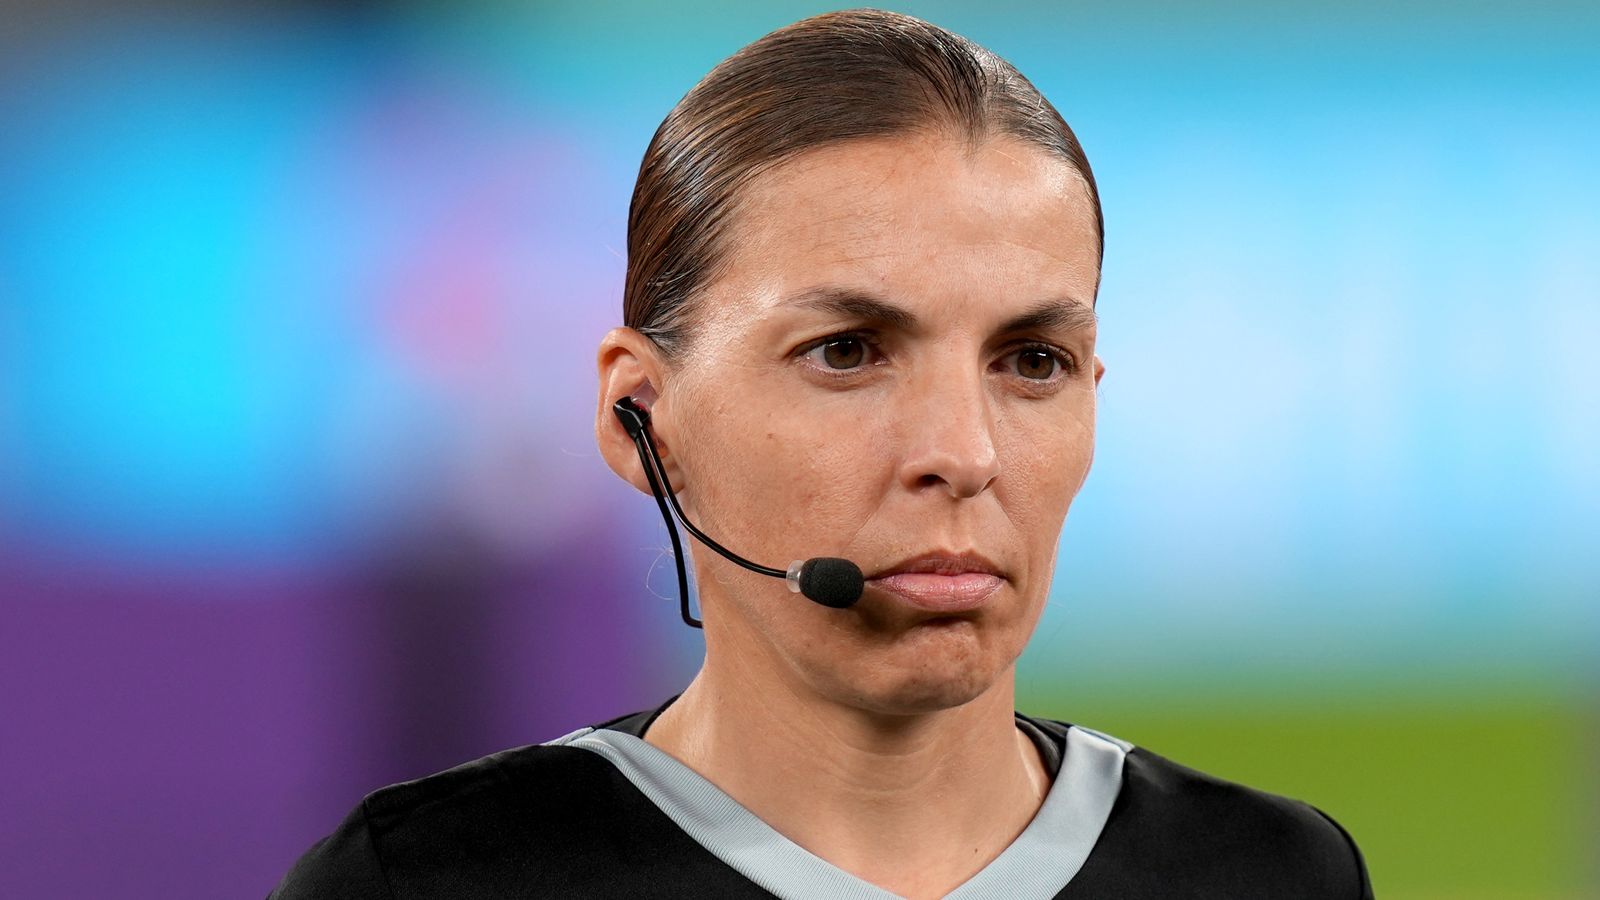 Mondiali 2022: Stephanie Frappart diventa la prima donna arbitro del torneo in Germania contro il Costa Rica |  notizie di calcio